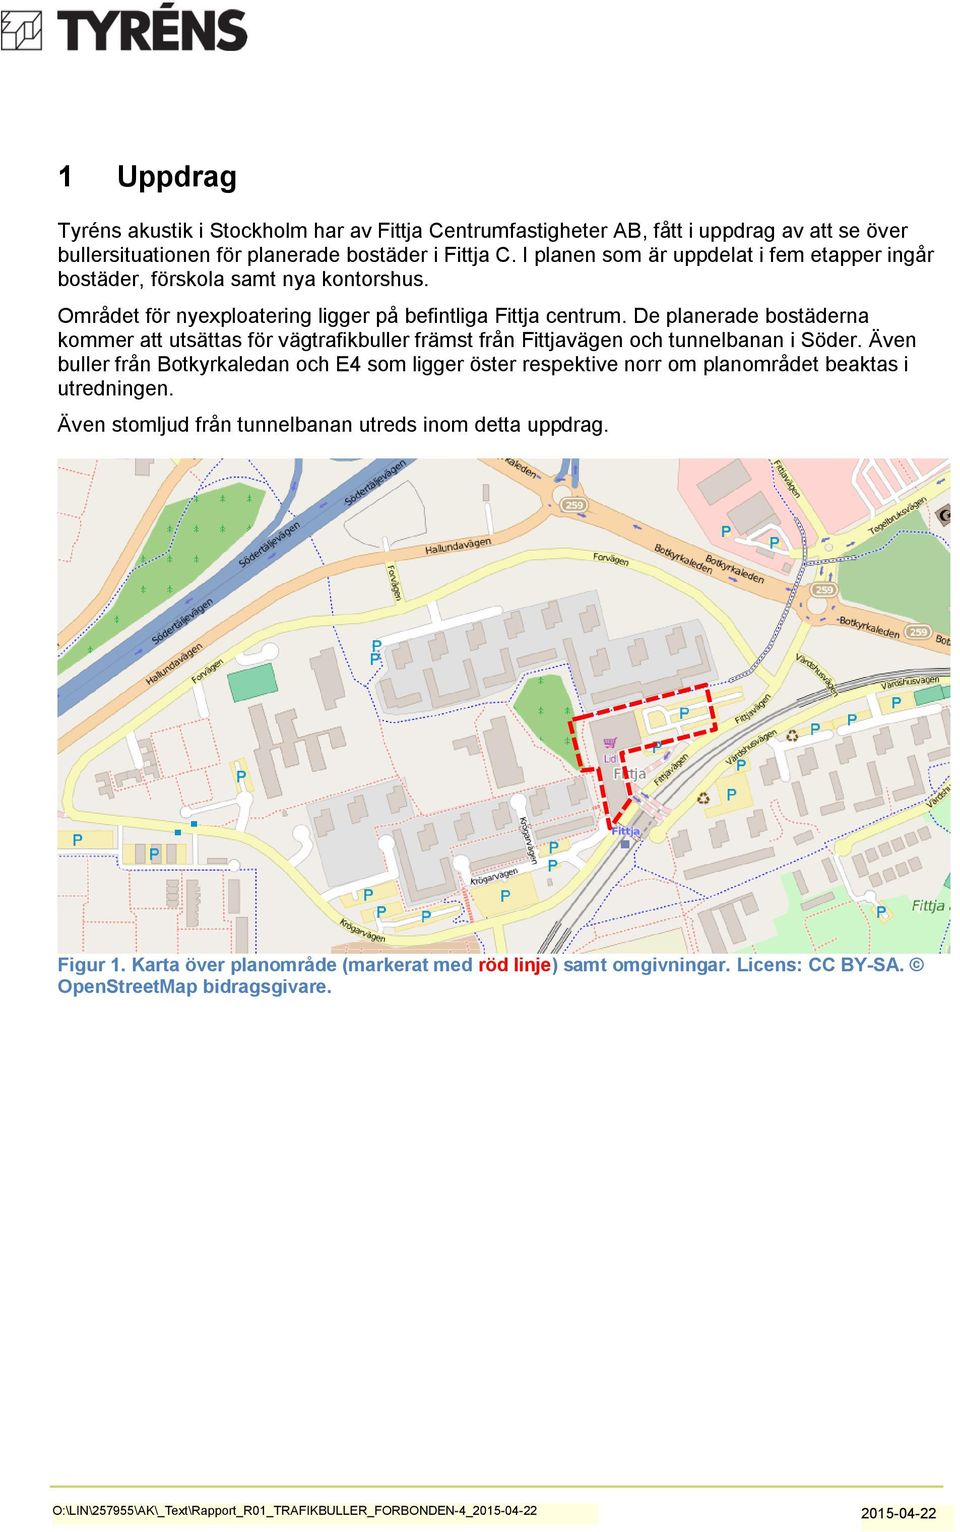 De planerade bostäderna kommer att utsättas för vägtrafikbuller främst från Fittjavägen och tunnelbanan i Söder.